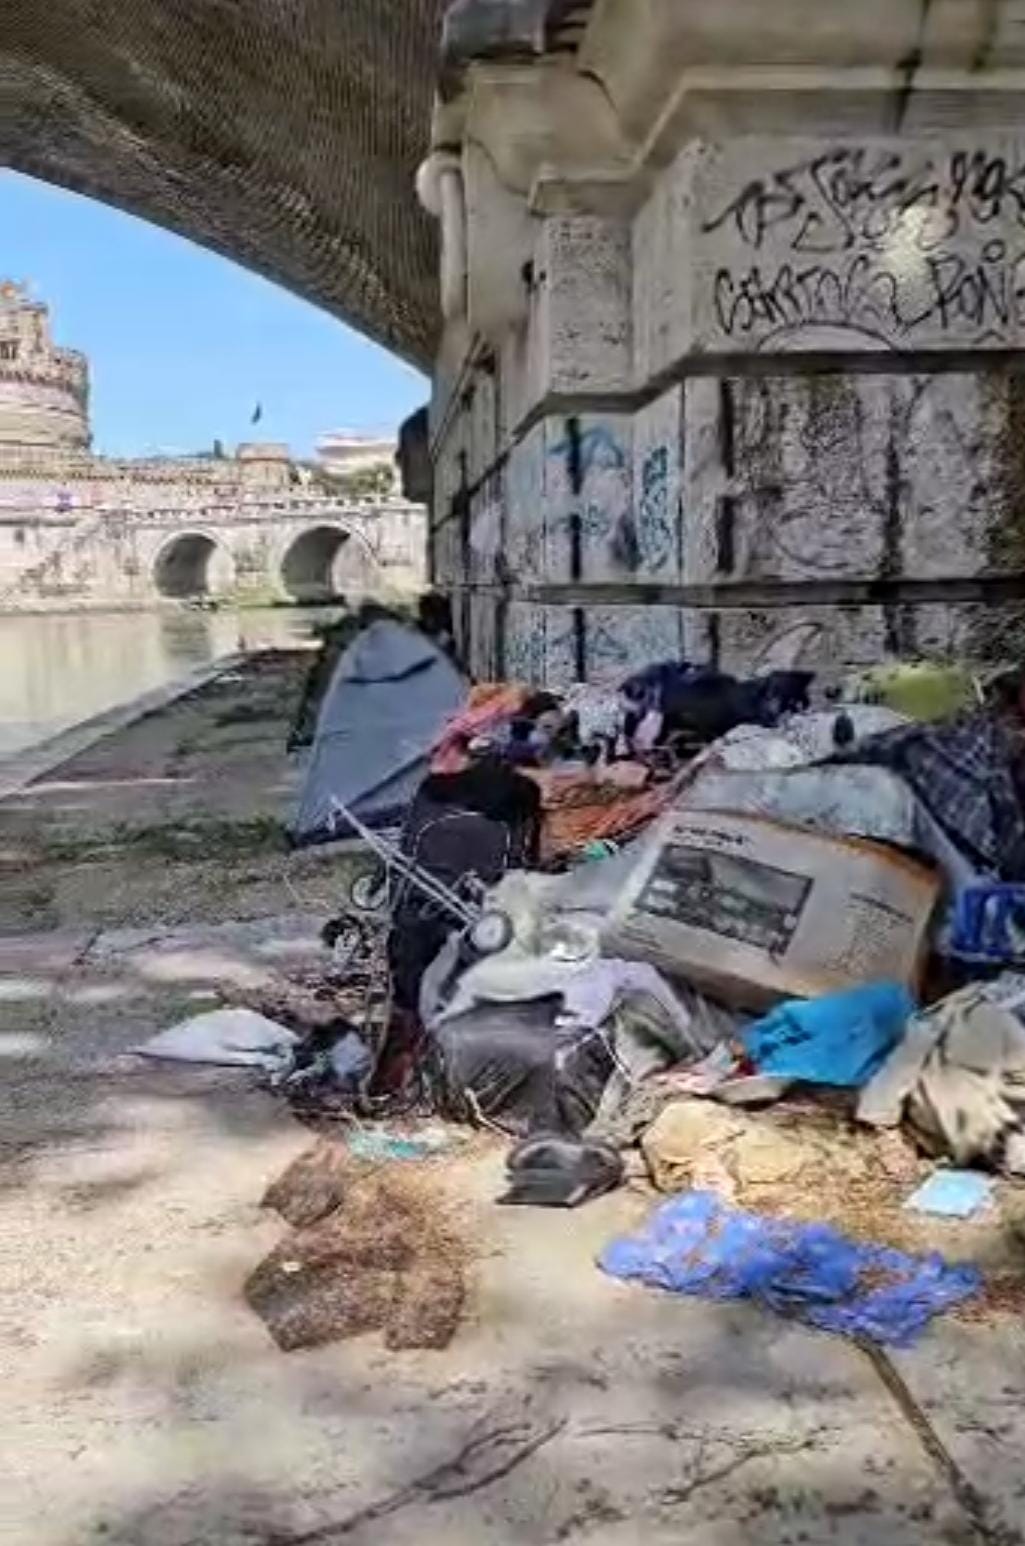 Discarica a cielo aperto sotto ponte Vittorio Emanuele a Roma, Italia dei Diritti grida vergogna
